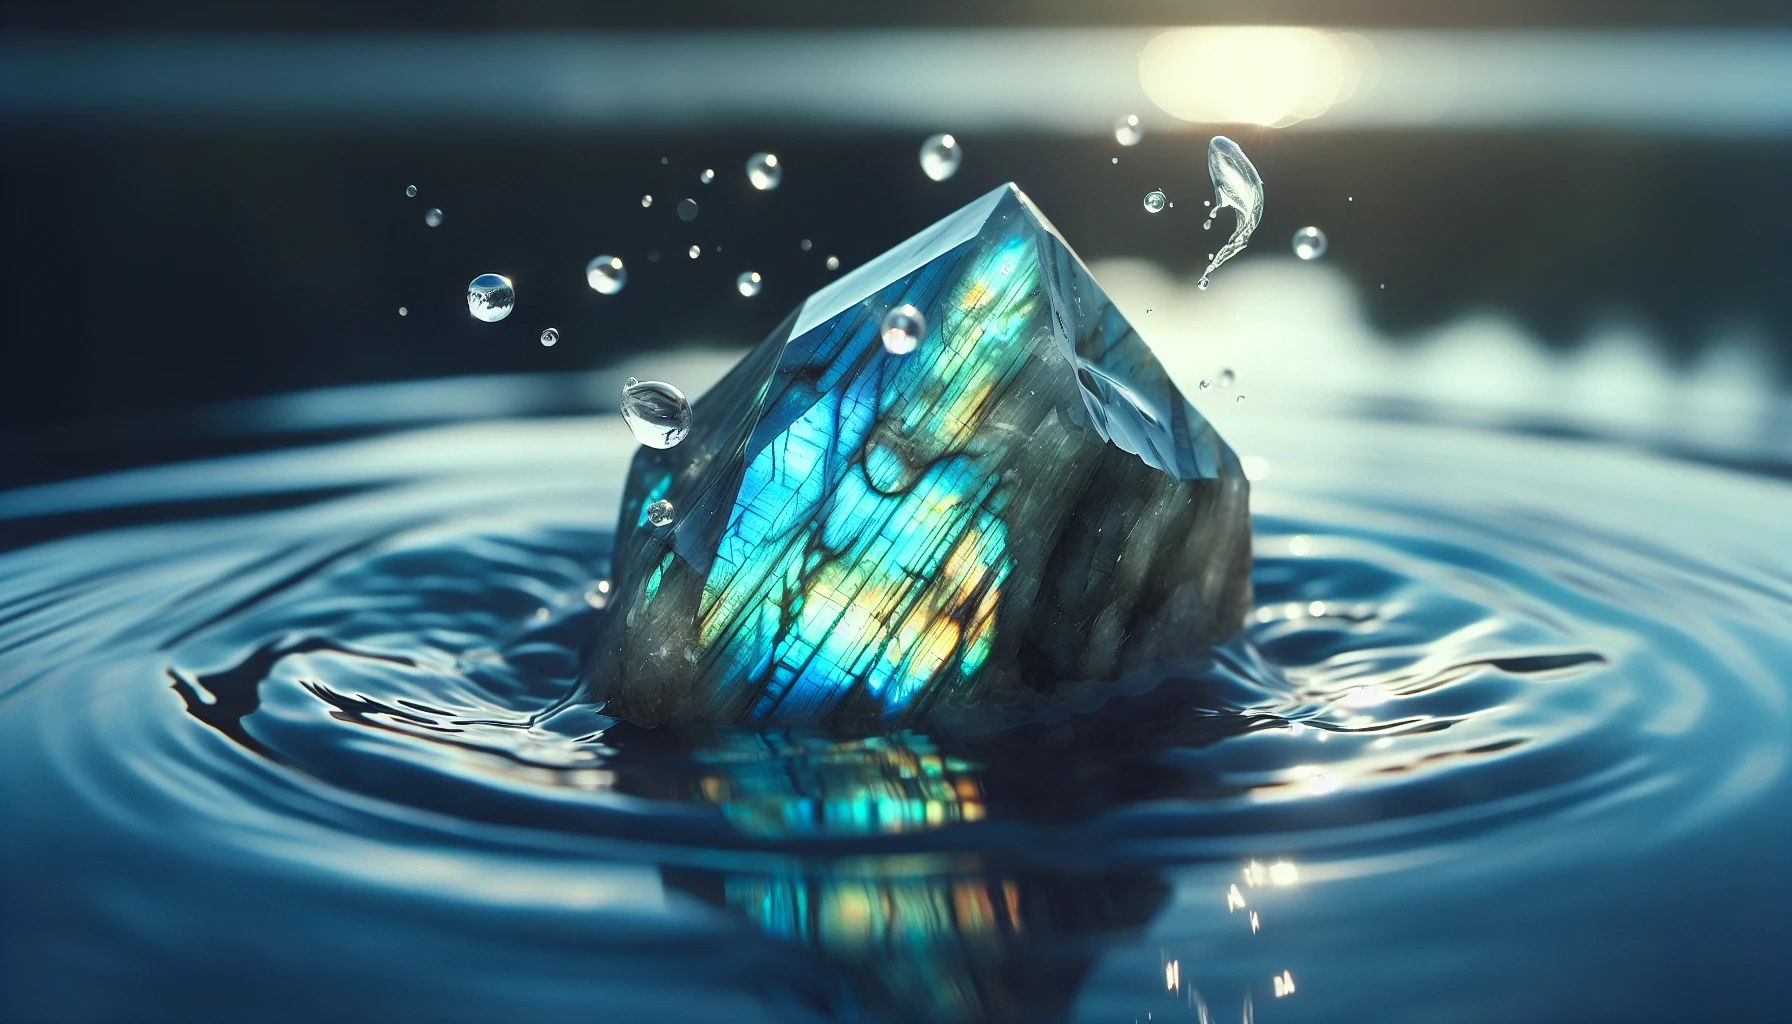 Labradorite crystal submerged in water